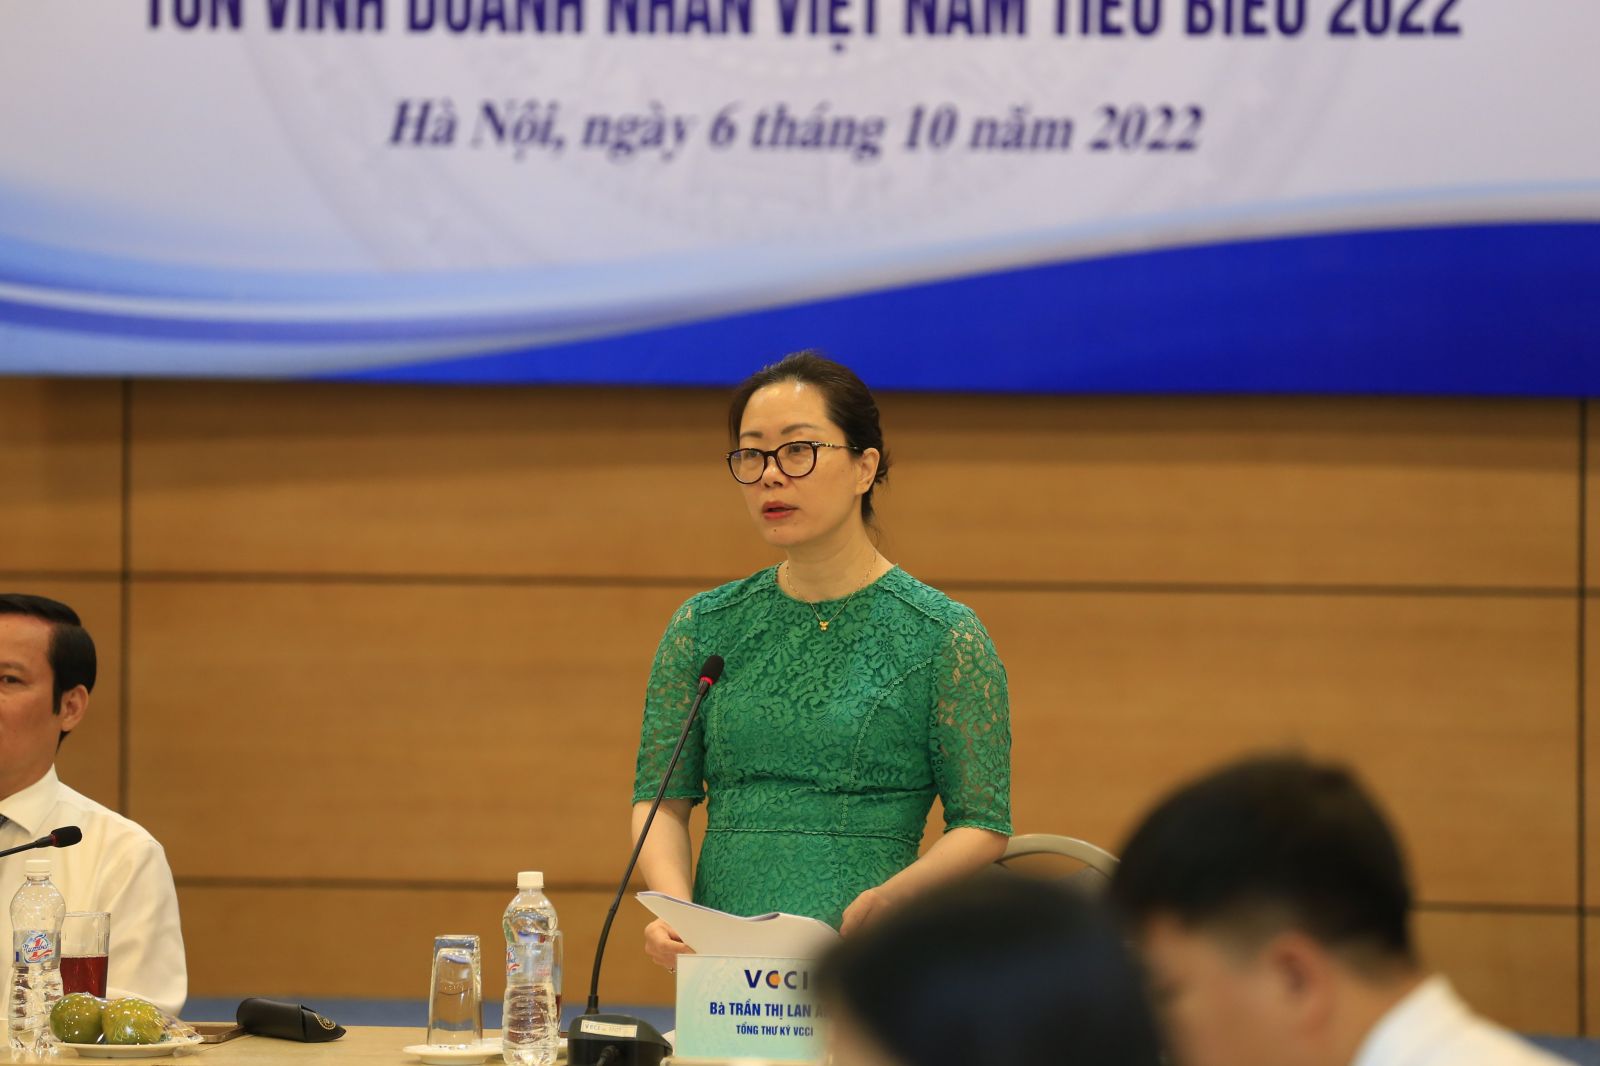 Tổng Thư ký VCCI Trần Thị Lan Anh thông tin về hội thảo khoa học “Đạo đức doanh nhân và văn hóa kinh doanh Việt Nam trong bối cảnh mới” (ảnh: Đức Thanh)